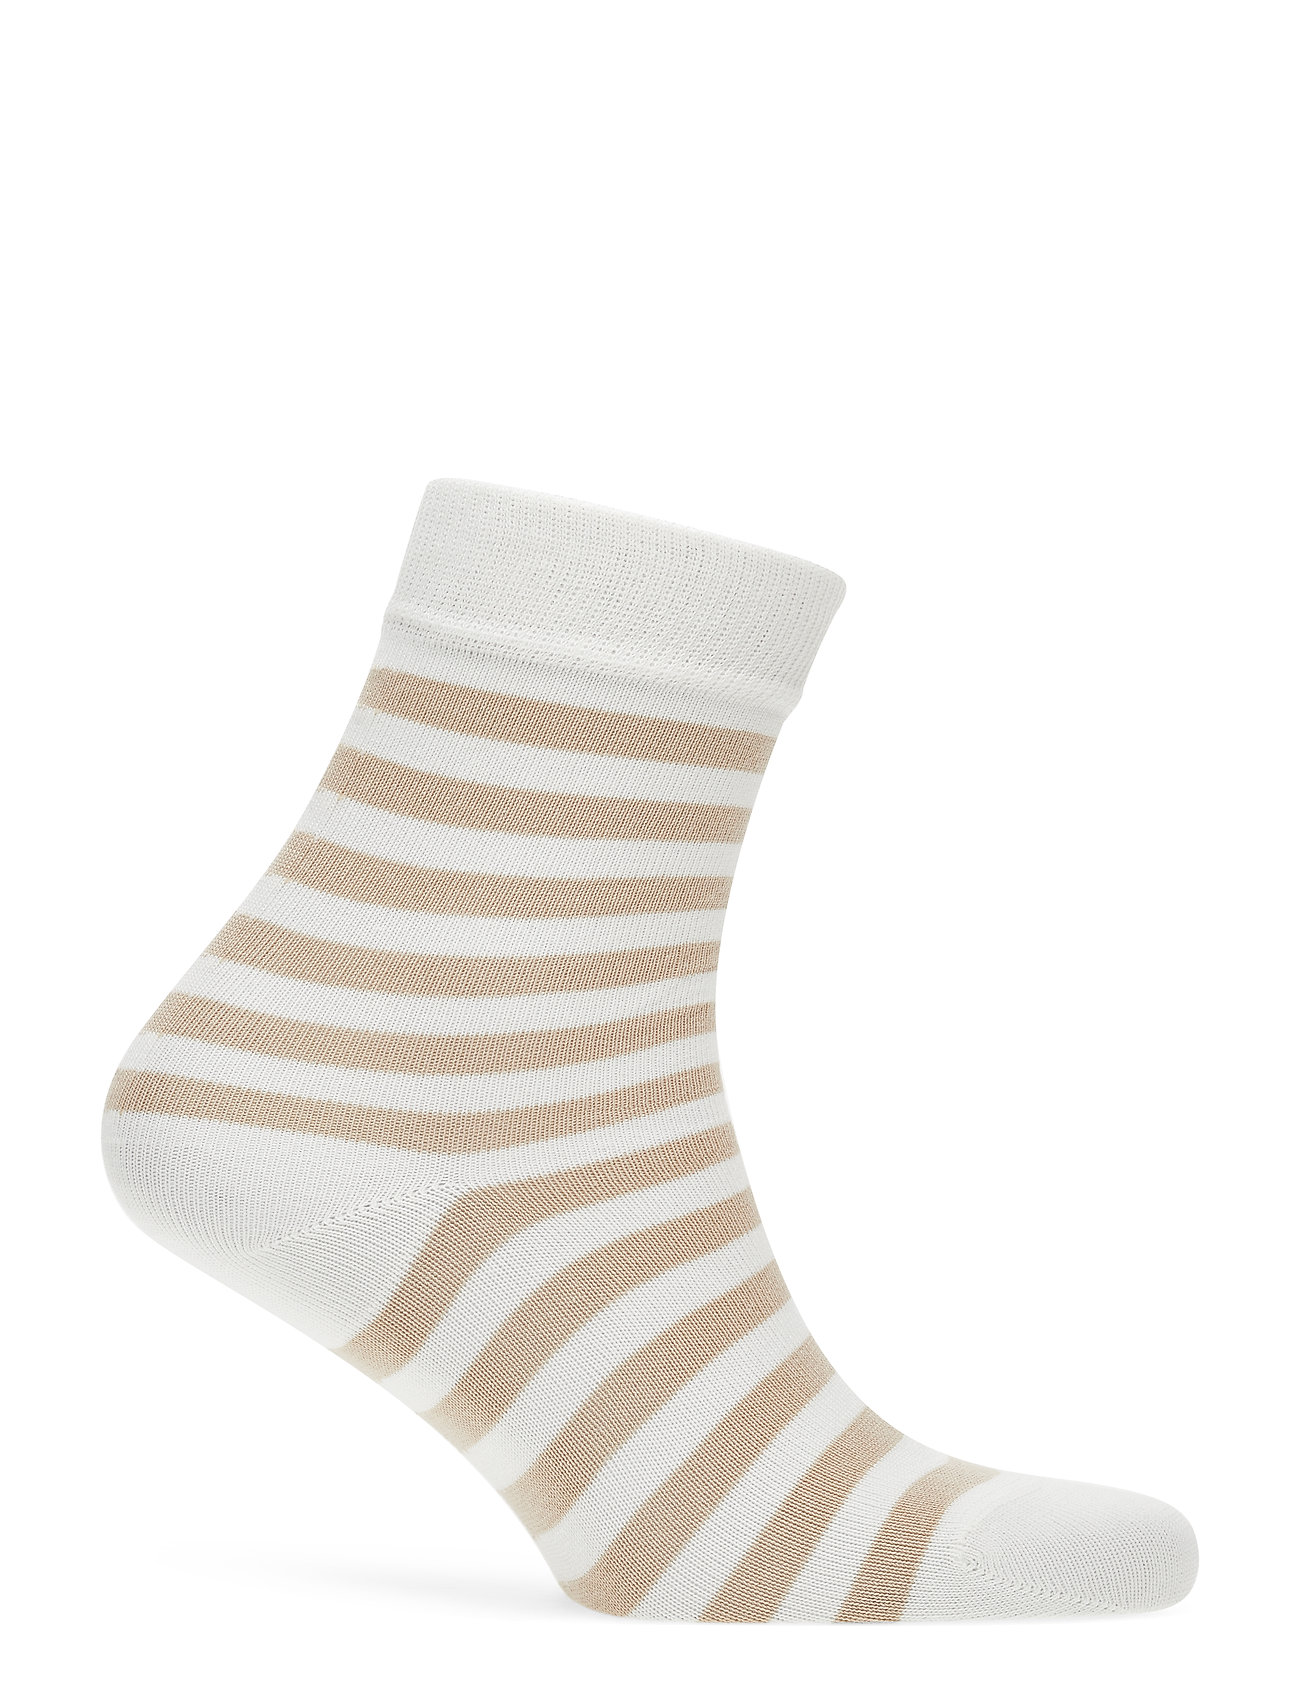 Marimekko - RAITSU Ankle socks - light beige, off white - 1